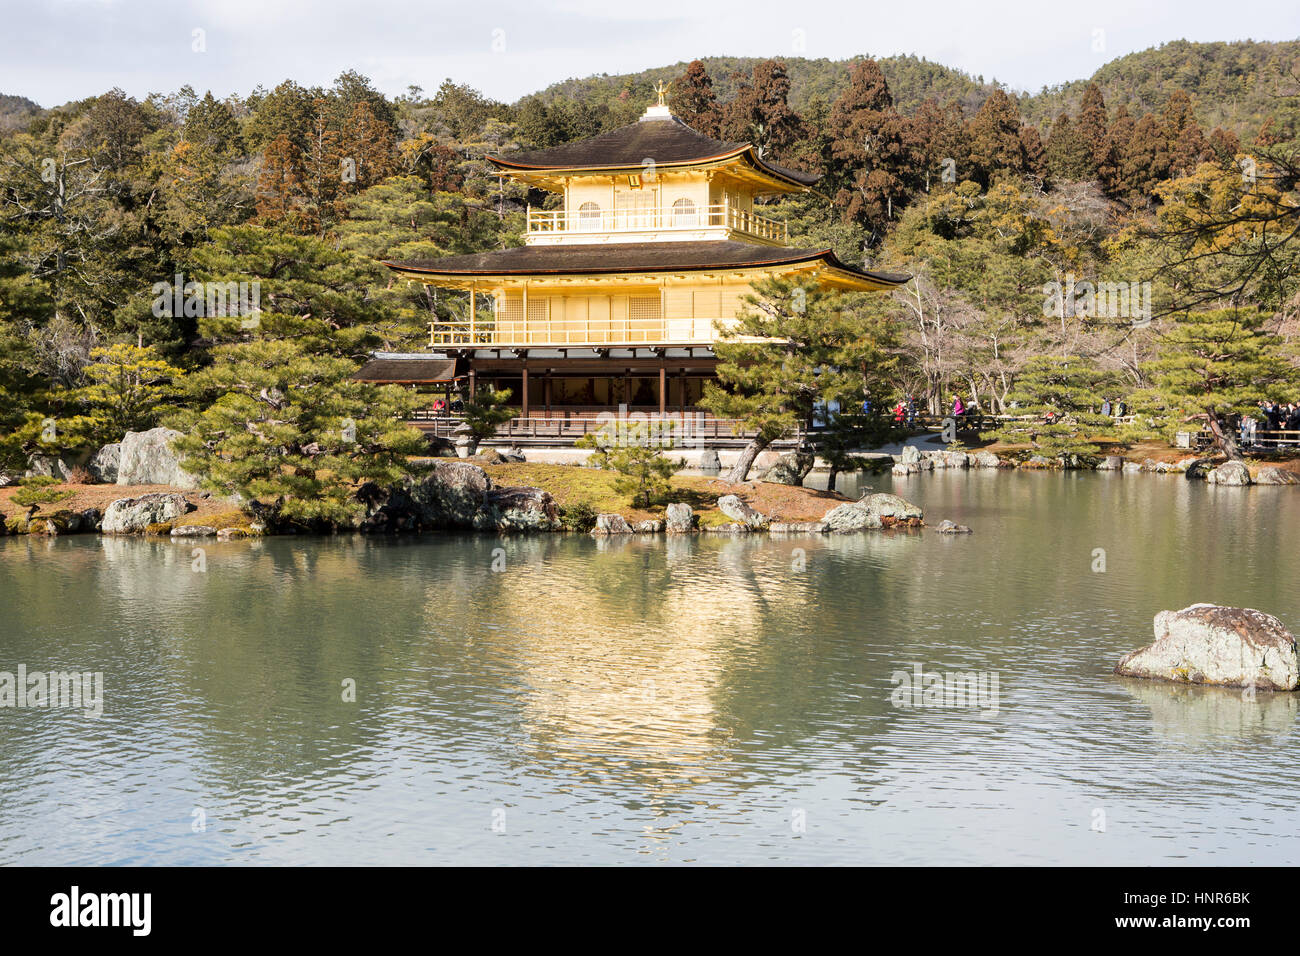 Le Kinkaku-ji, le pavillon d'or (金閣寺), officiellement appelé Rokuon-ji, est un temple bouddhiste Zen à Kyoto, Japon Banque D'Images